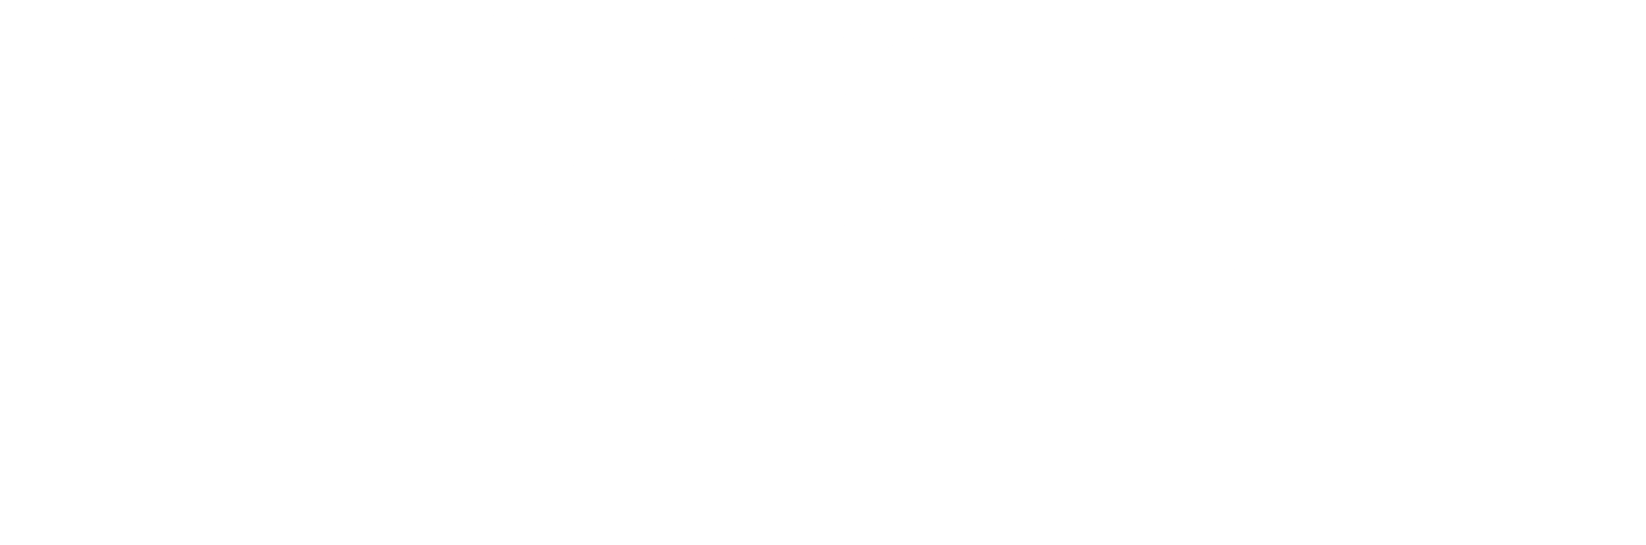 leckotech-logo-white